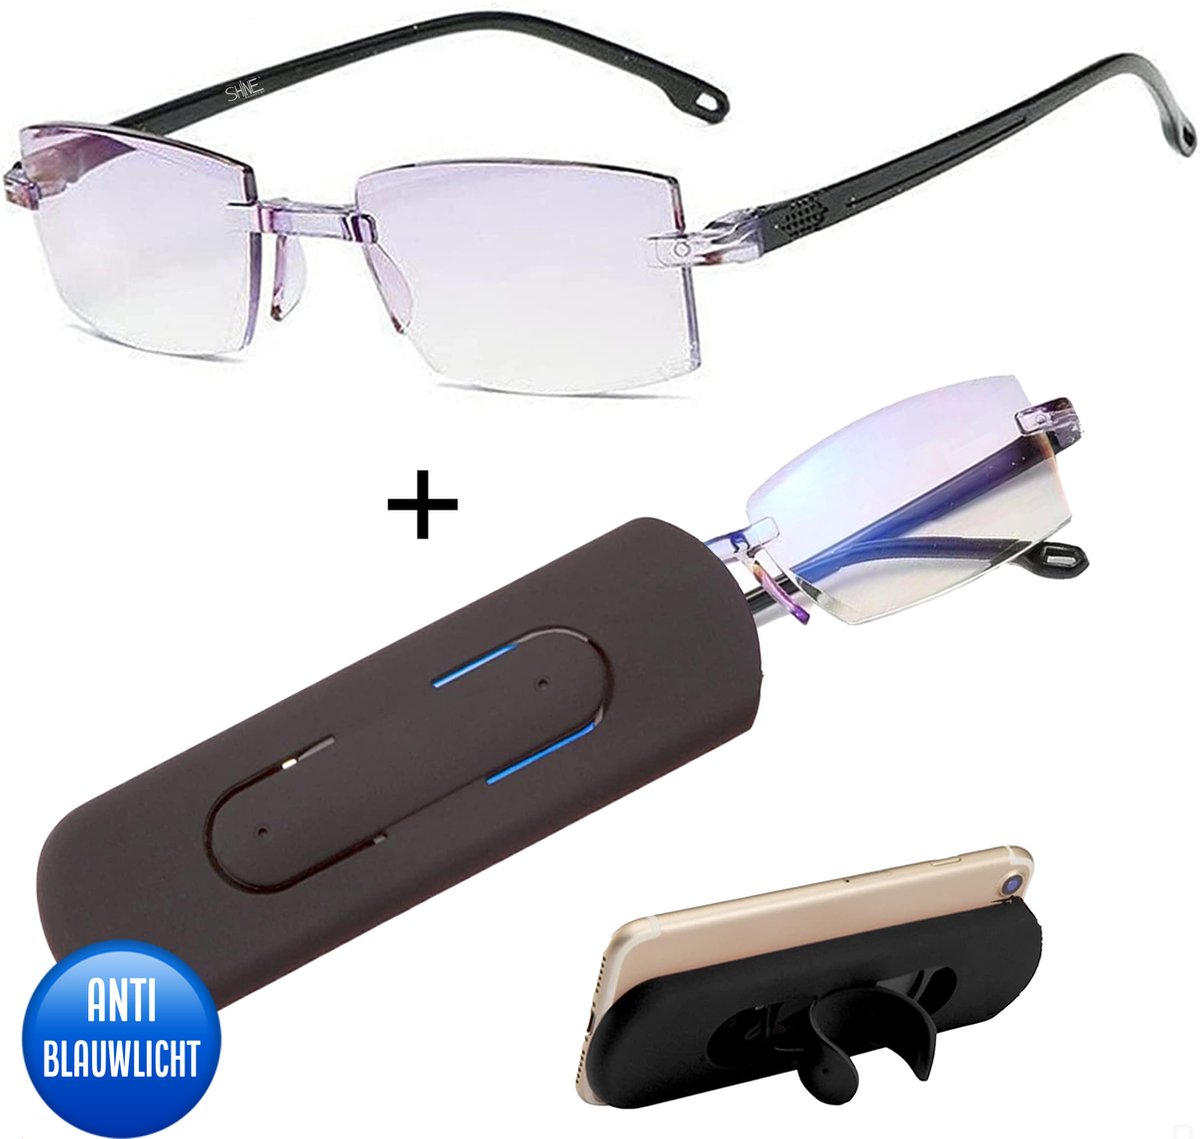 Shine Anti blauw Licht Computerbril 1.50 - Multifocale Beeldschermbril - Leesbril Voor Dames en Heren - Incl Accessoires - Shine